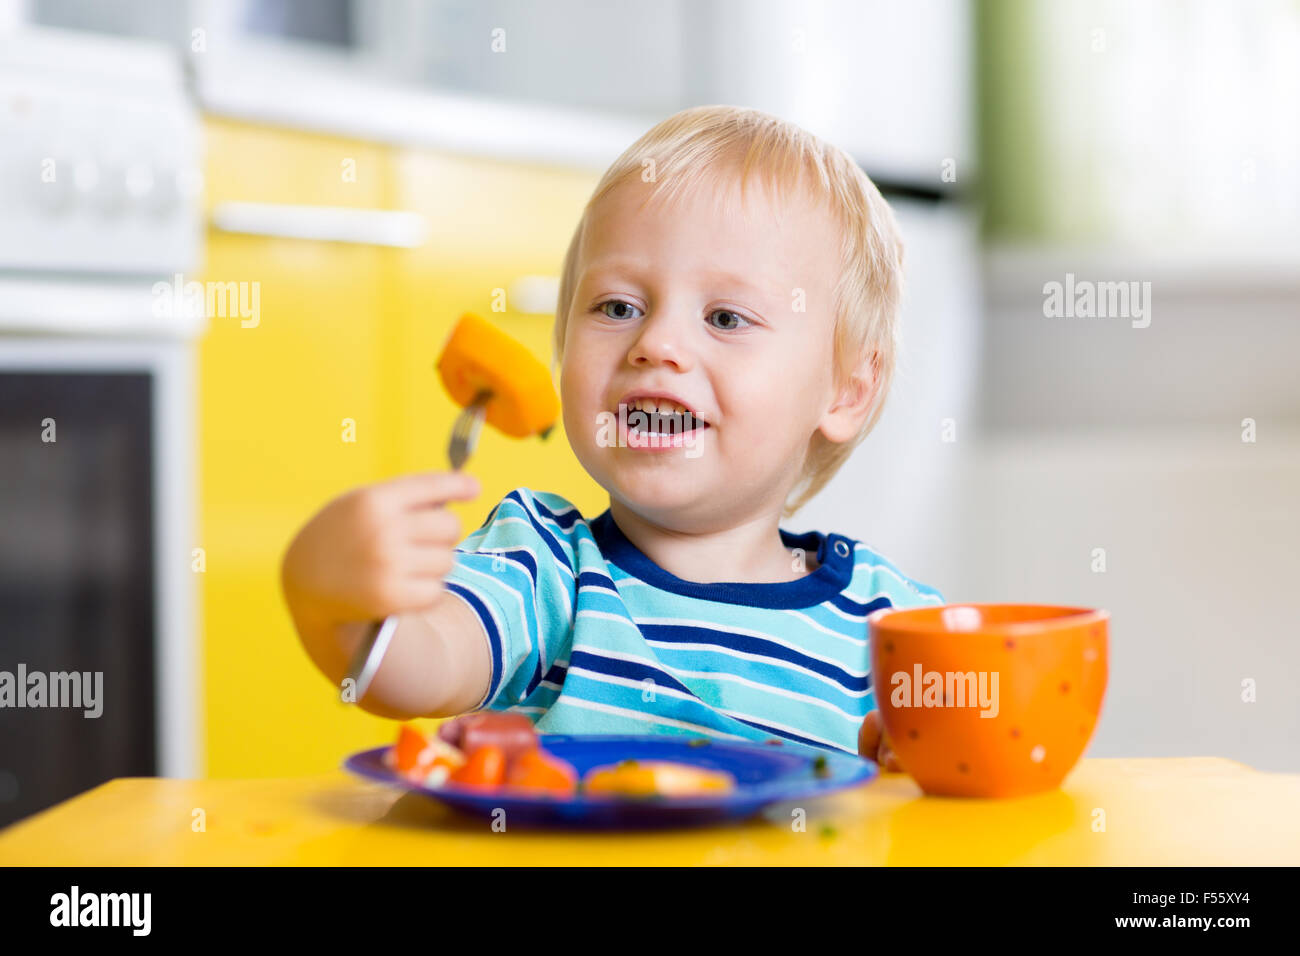 Nettes Kind junge isst gesund essen Gemüse Stockfoto